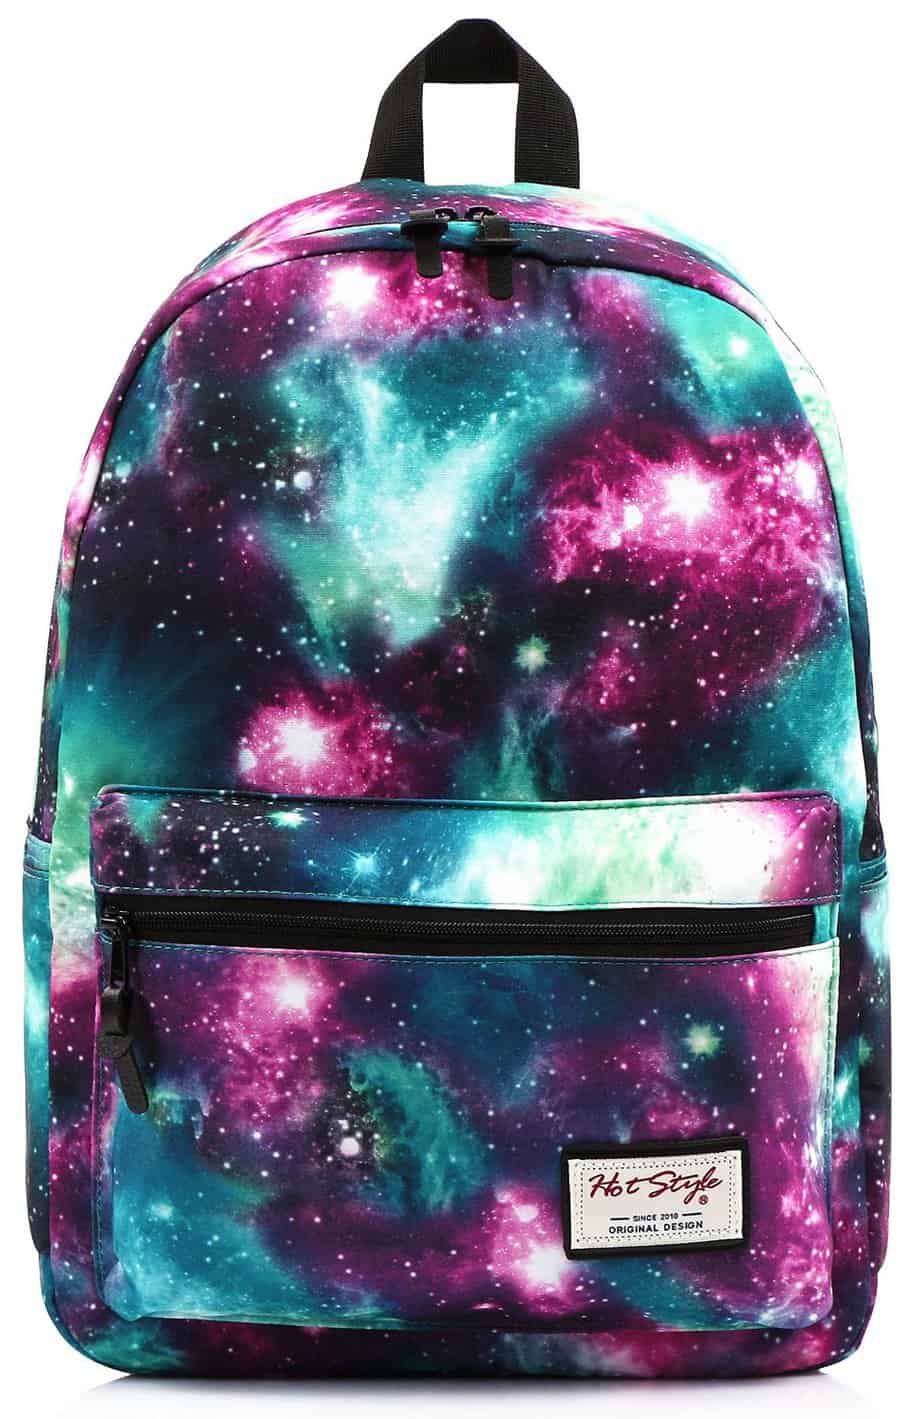 Kids school backpack